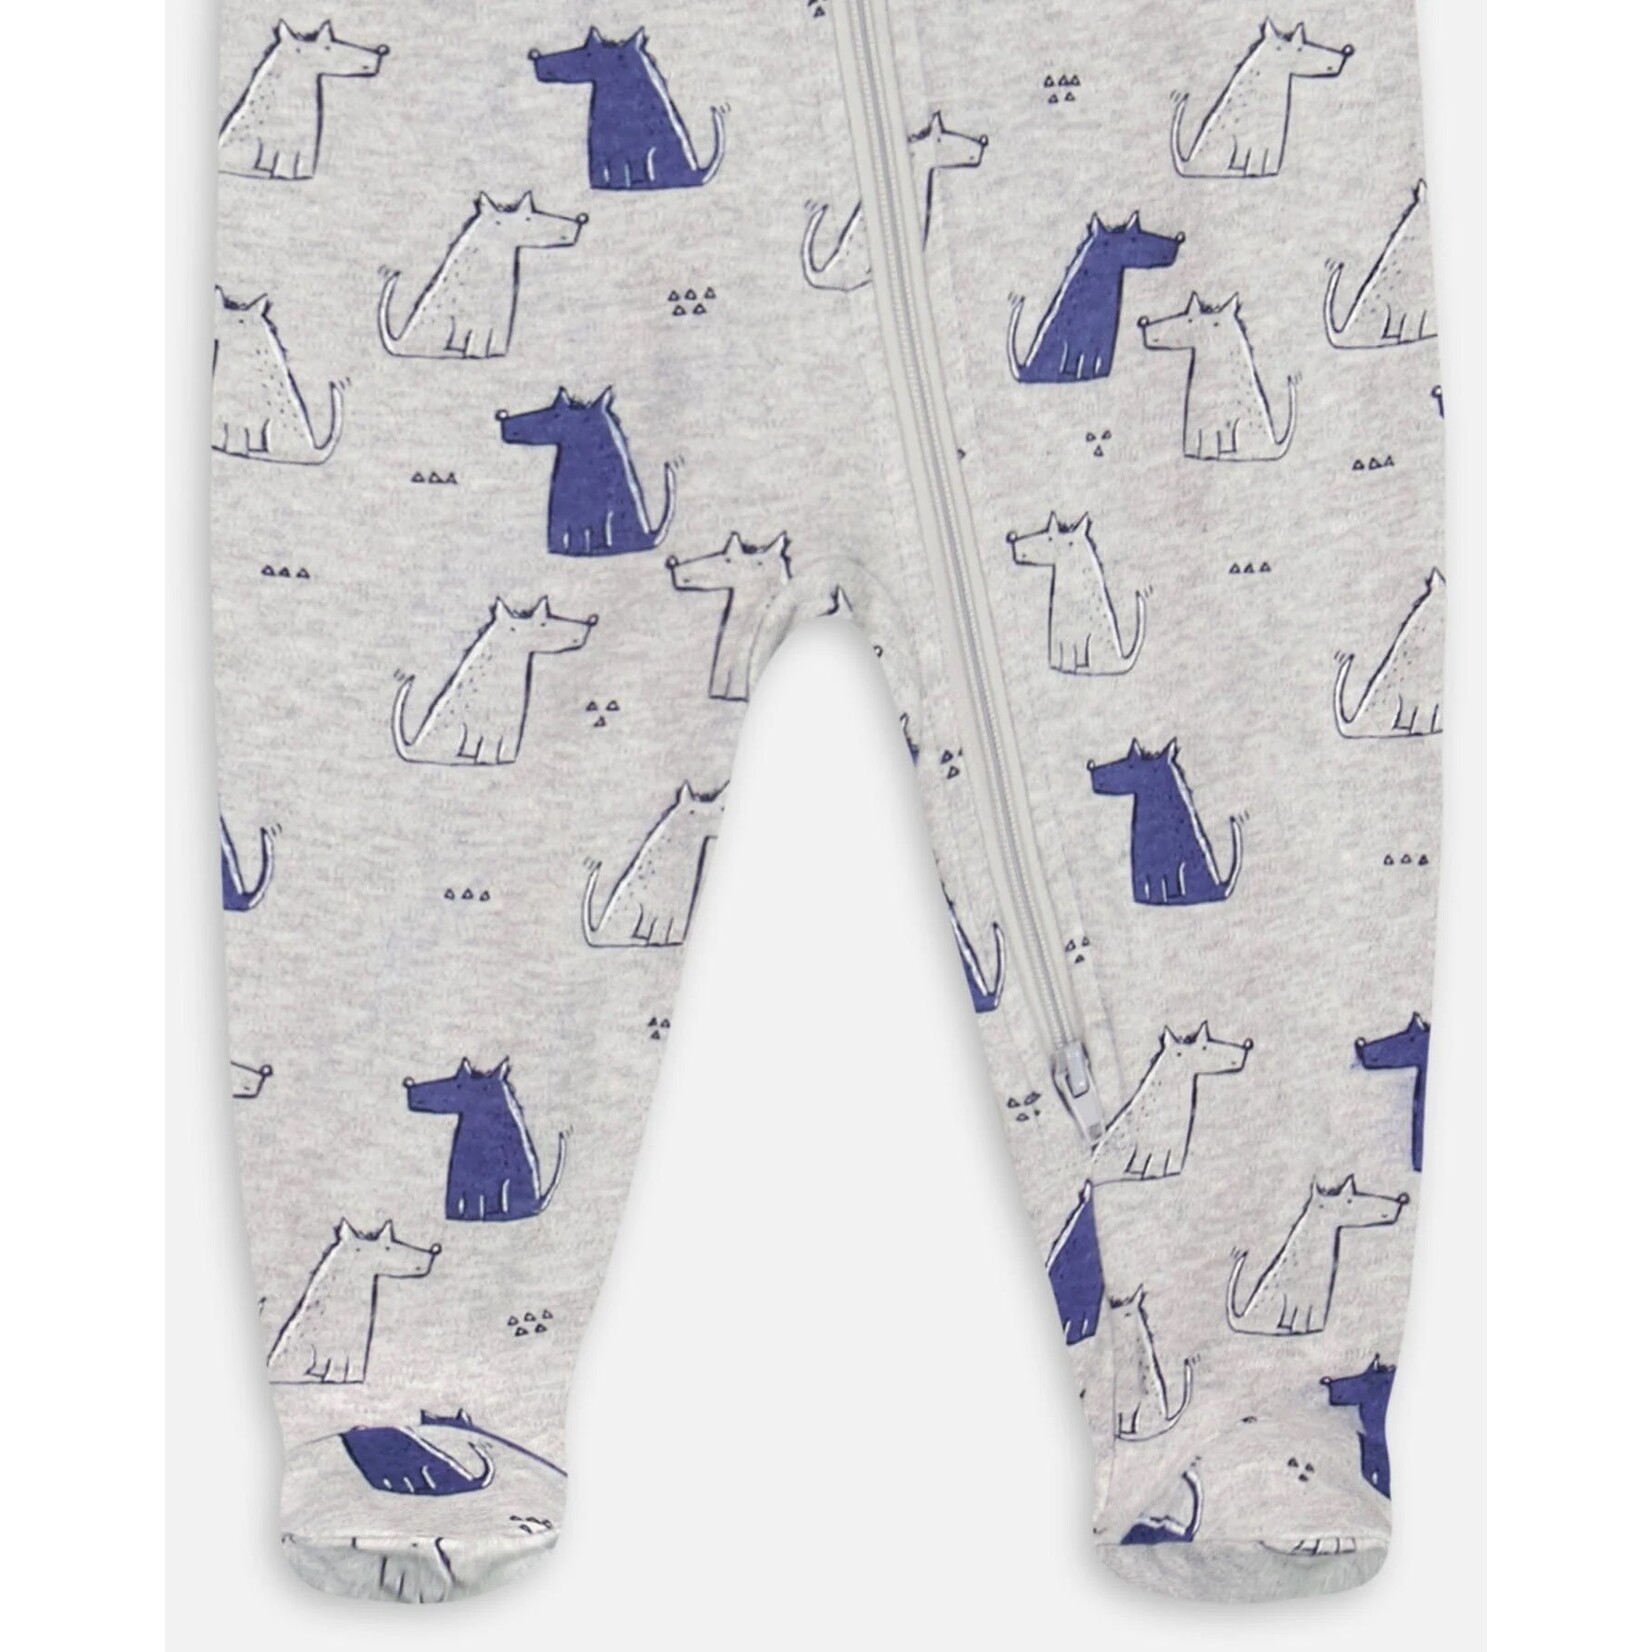 Deux par Deux DEUX PAR DEUX - Pyjama de bébé en coton bio gris chiné avec imprimé de chiens